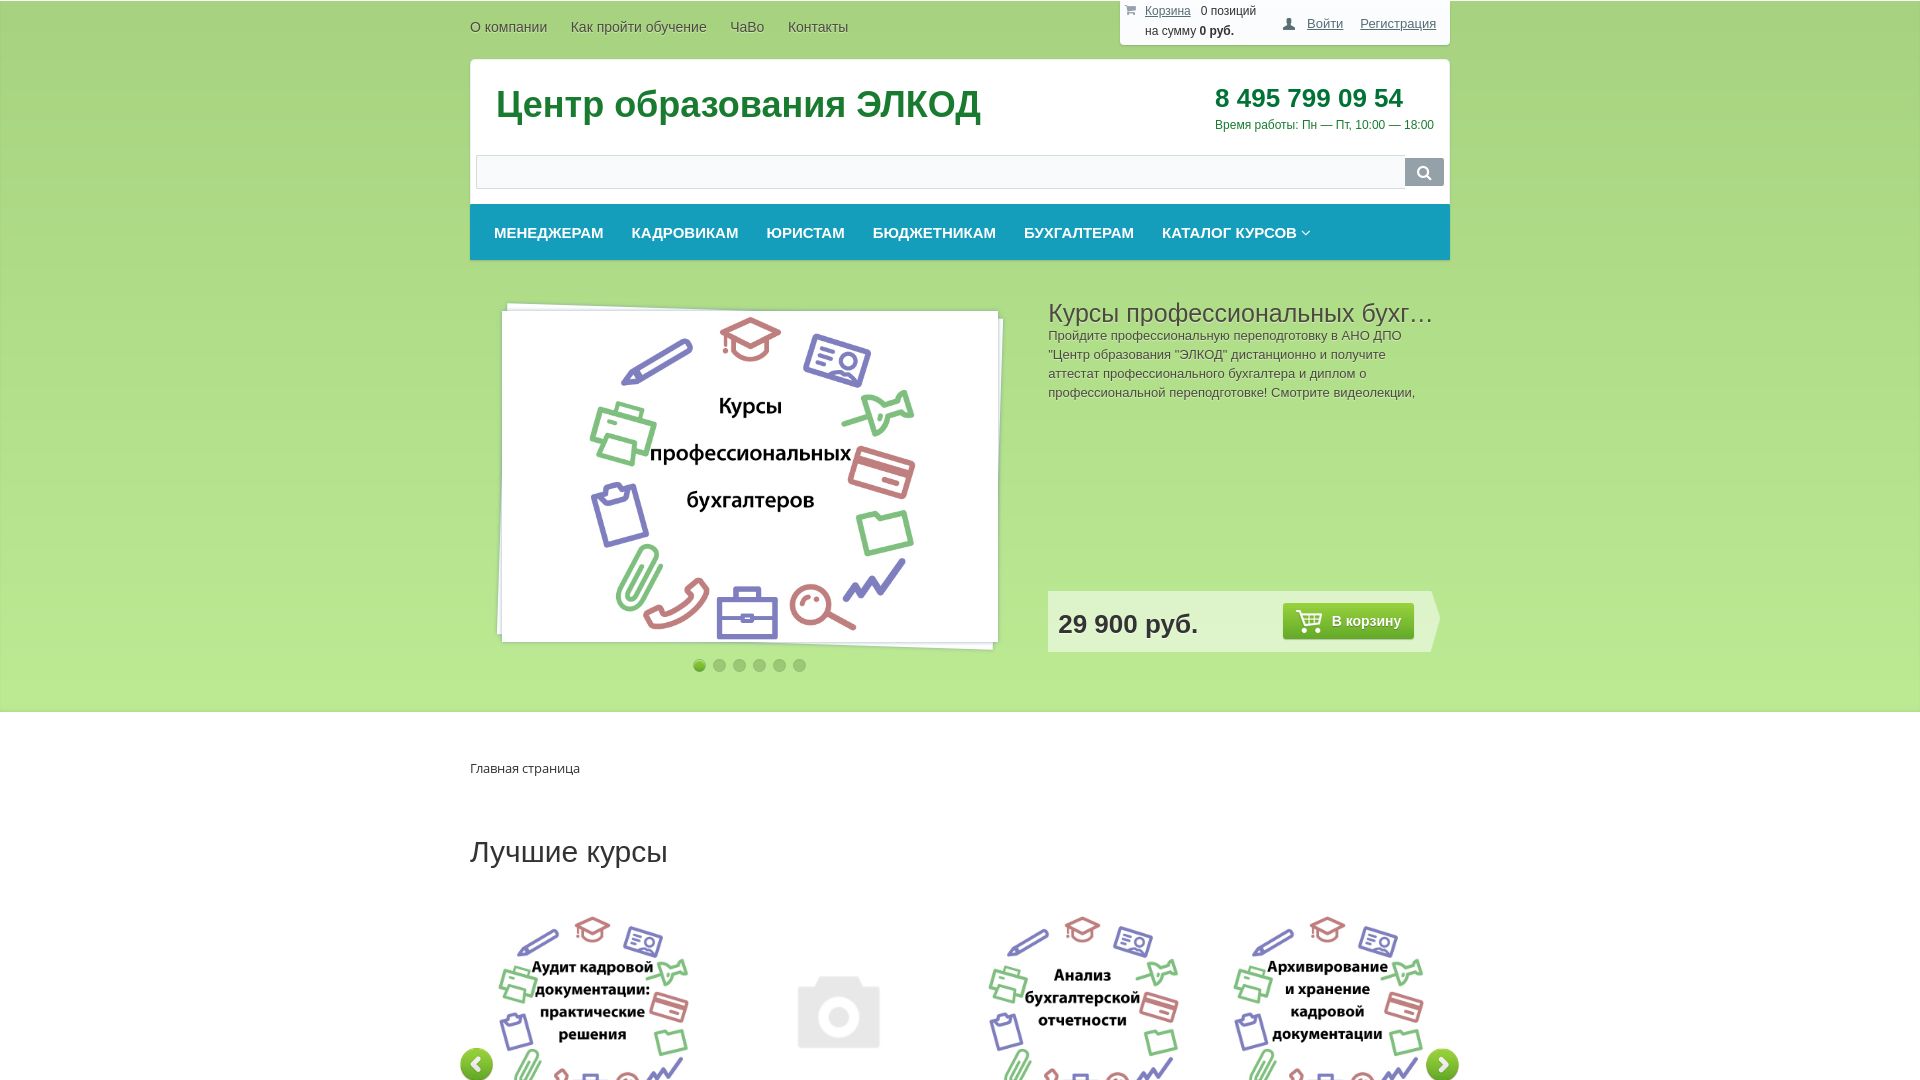 Website status elseminar.ru is   ONLINE